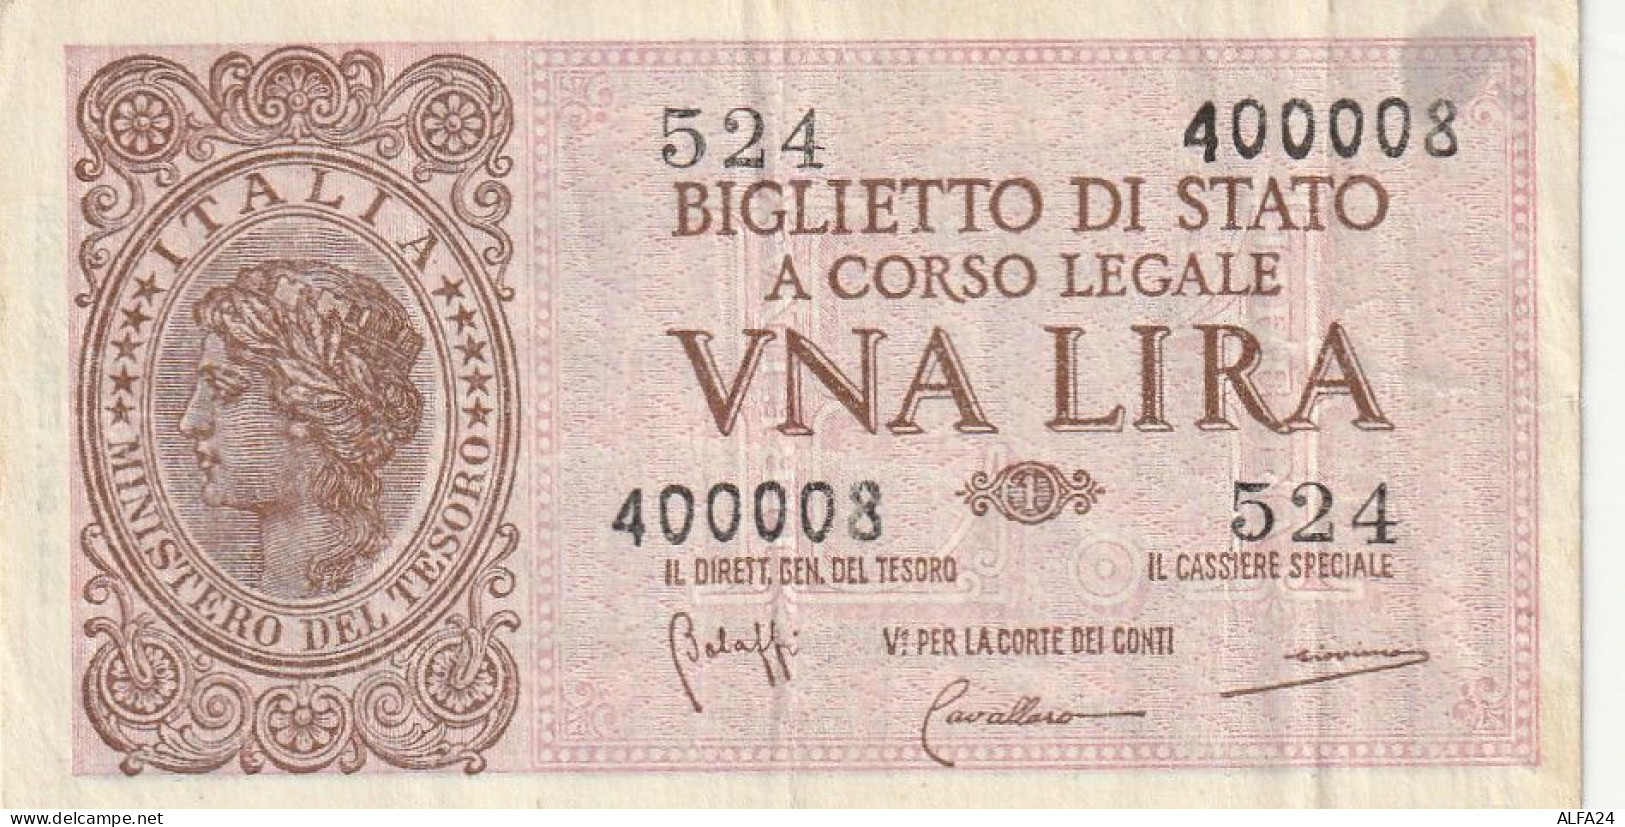 BANCONOTA BIGLIETTO DI STATO ITALIA 1 LIRA VF  (B_345 - Italië – 1 Lira